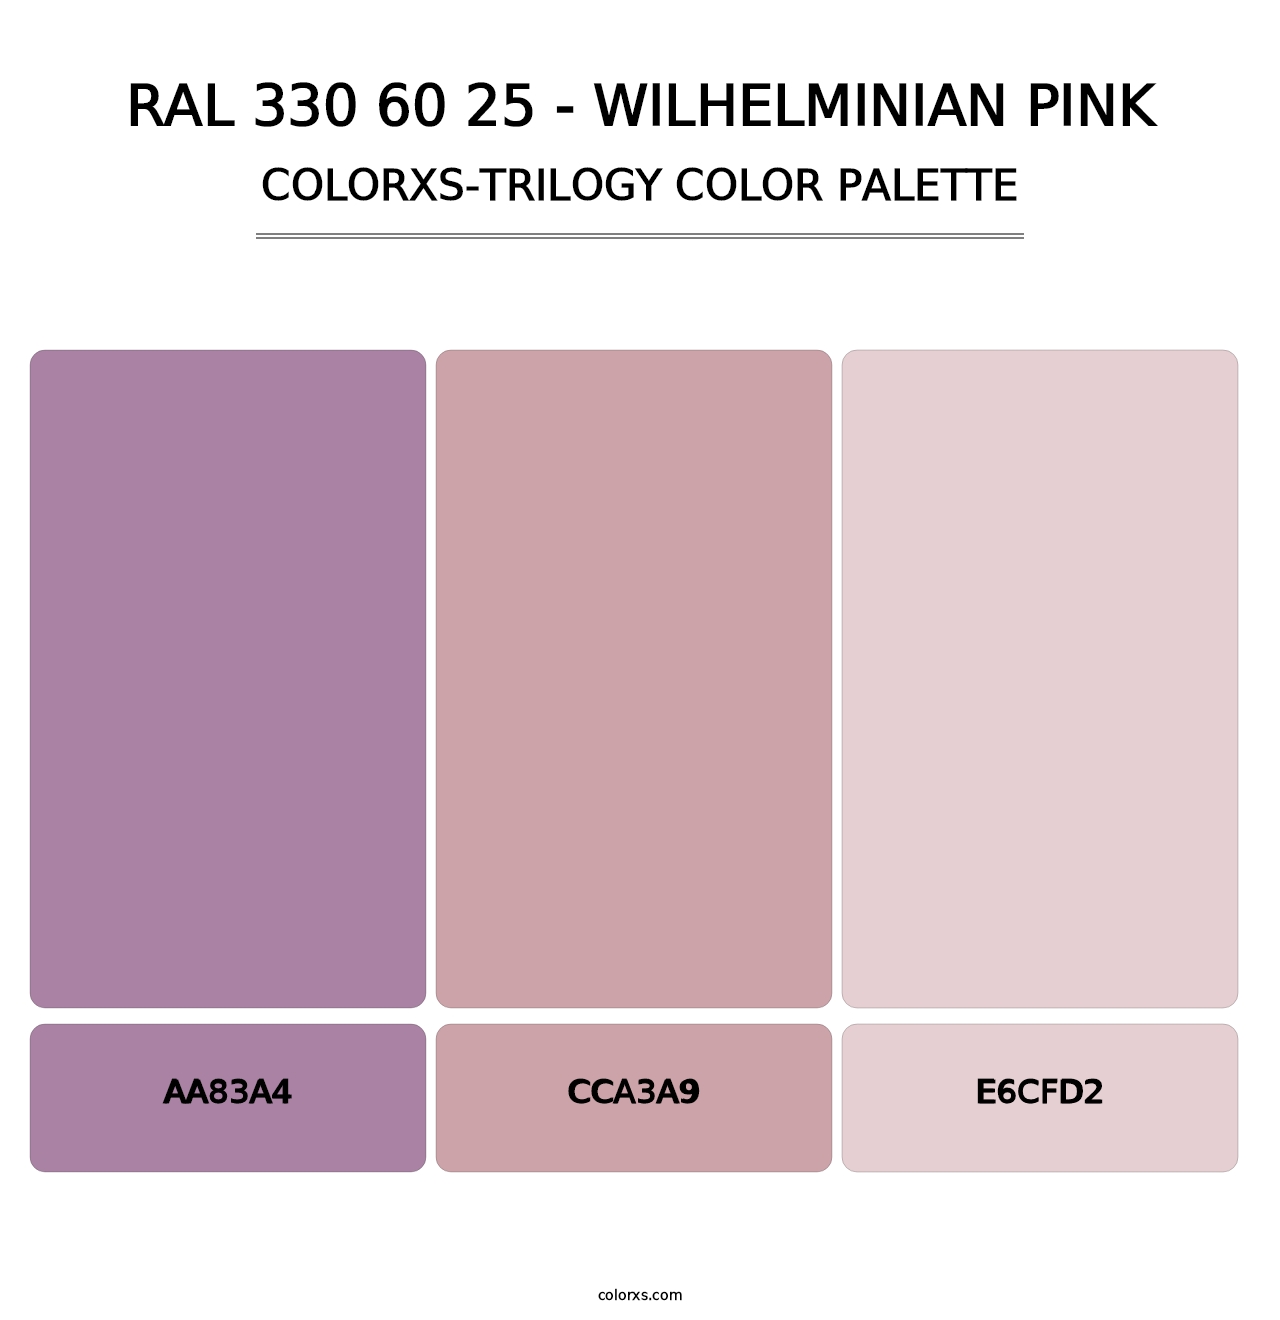 RAL 330 60 25 - Wilhelminian Pink - Colorxs Trilogy Palette